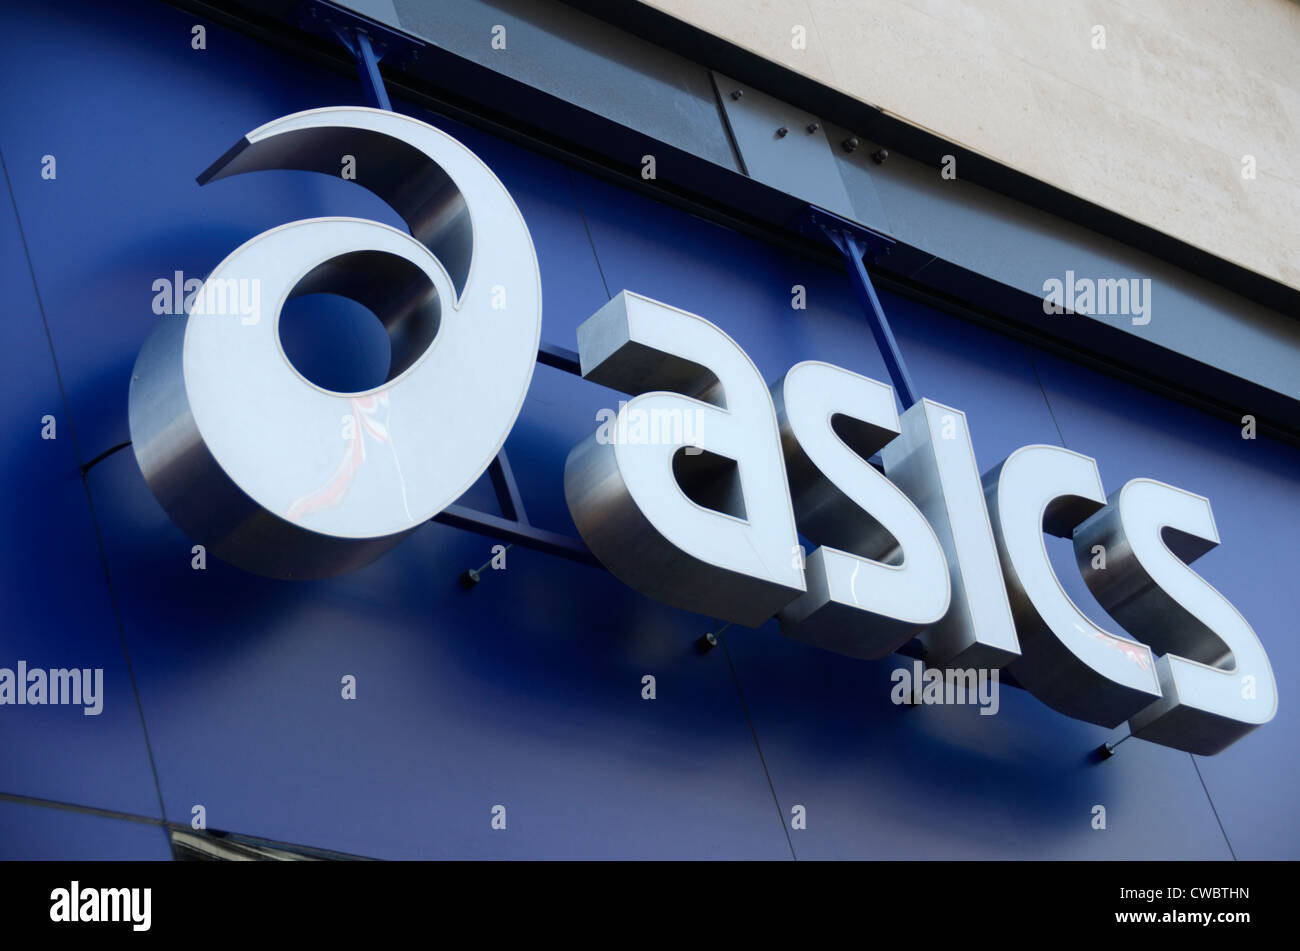 Basics fashion shop sign logo, London, England Stock Photo - Alamy